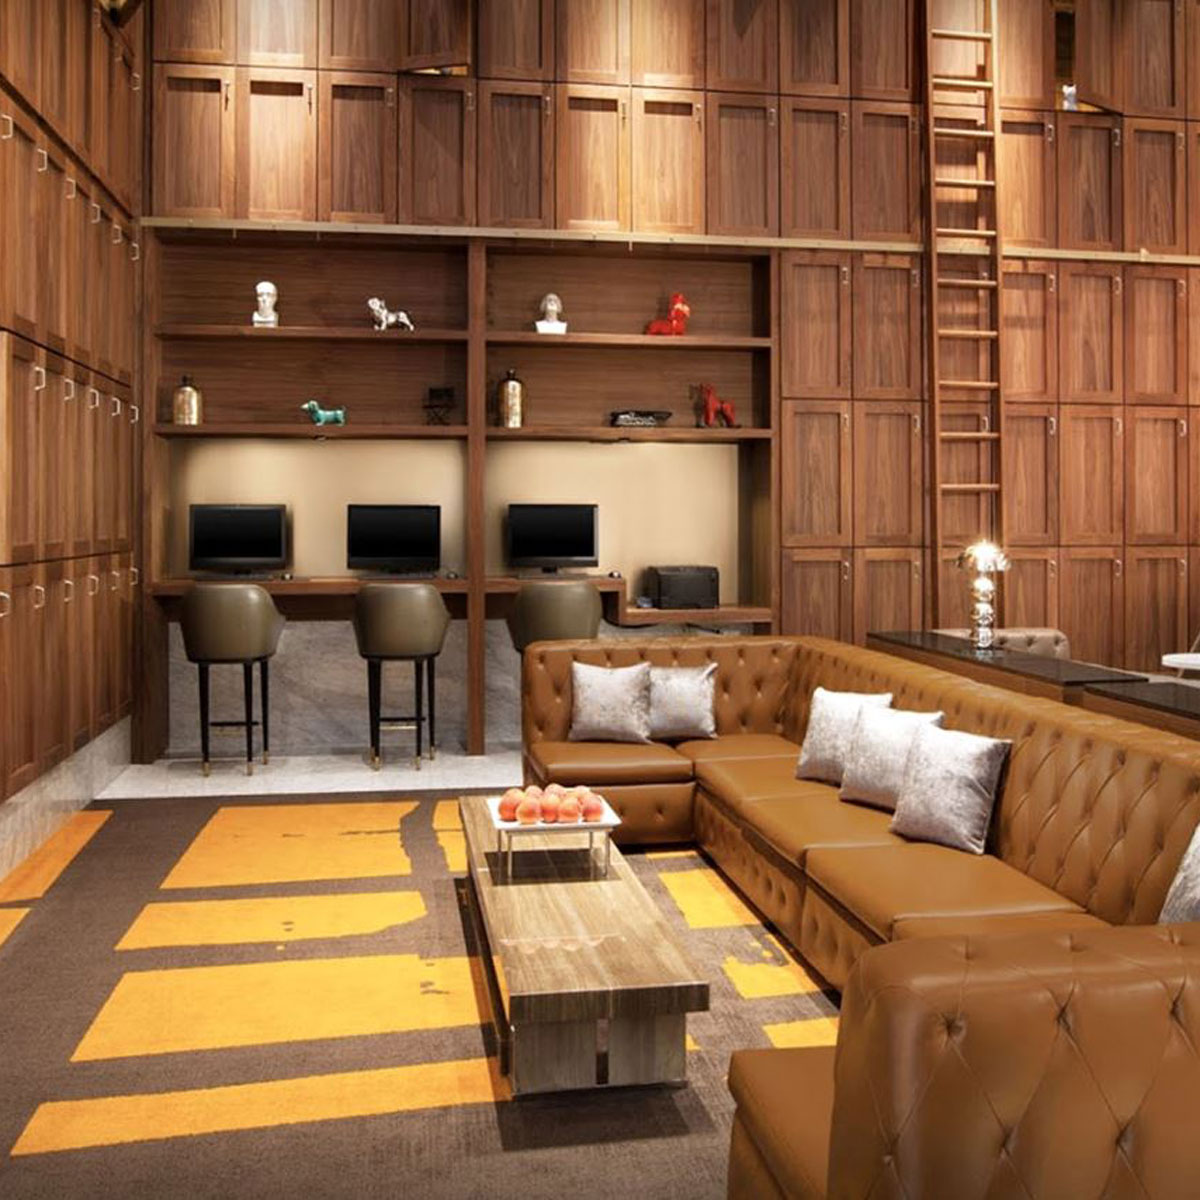 FF&E in America - Contraxx Customer Hospitality Furniture Designers Library